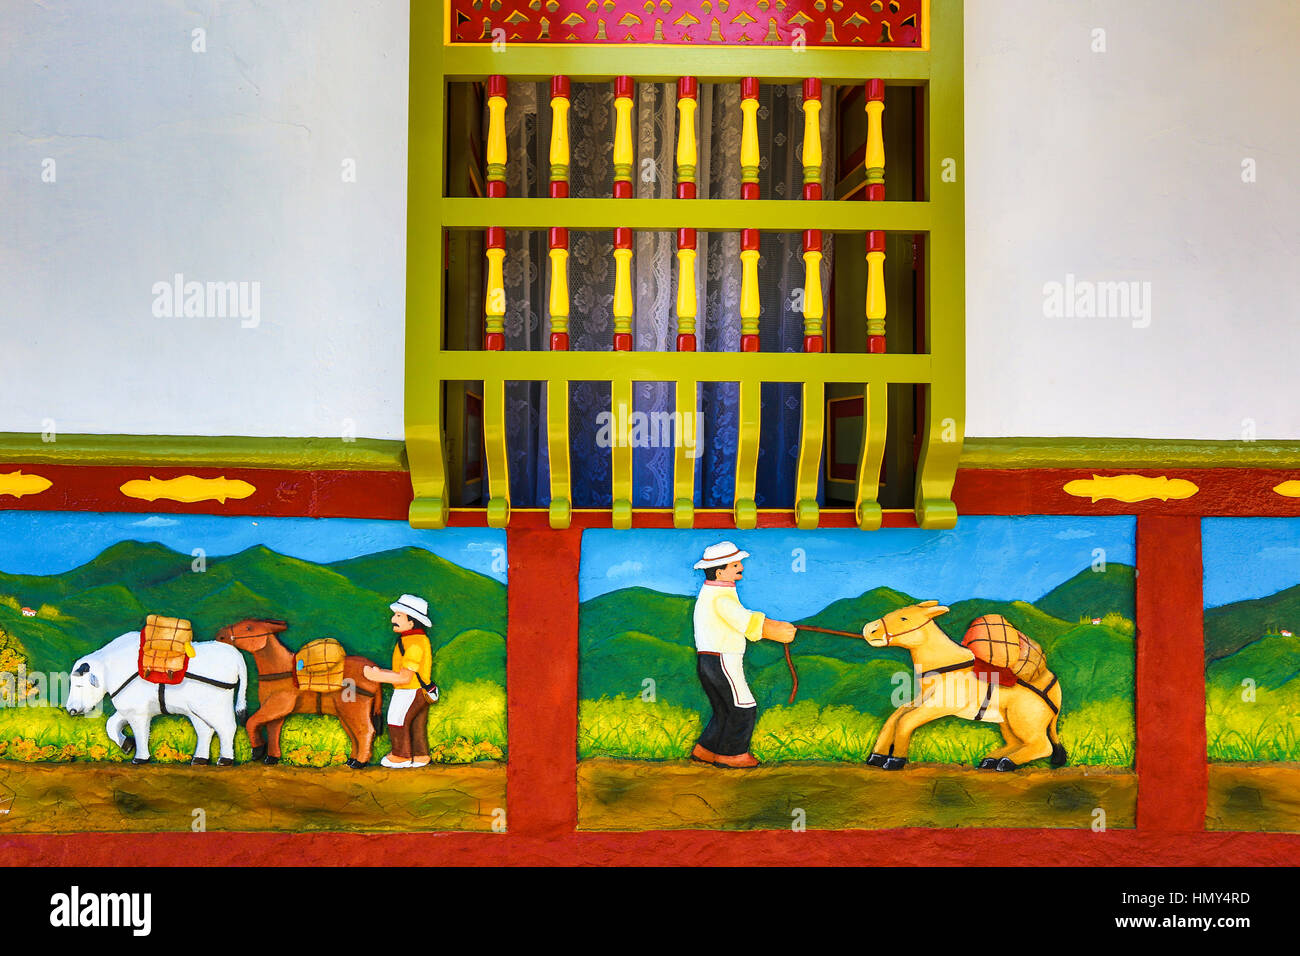 Bâtiment avec zocalos Colombie Guatape peintes de couleurs vives Banque D'Images